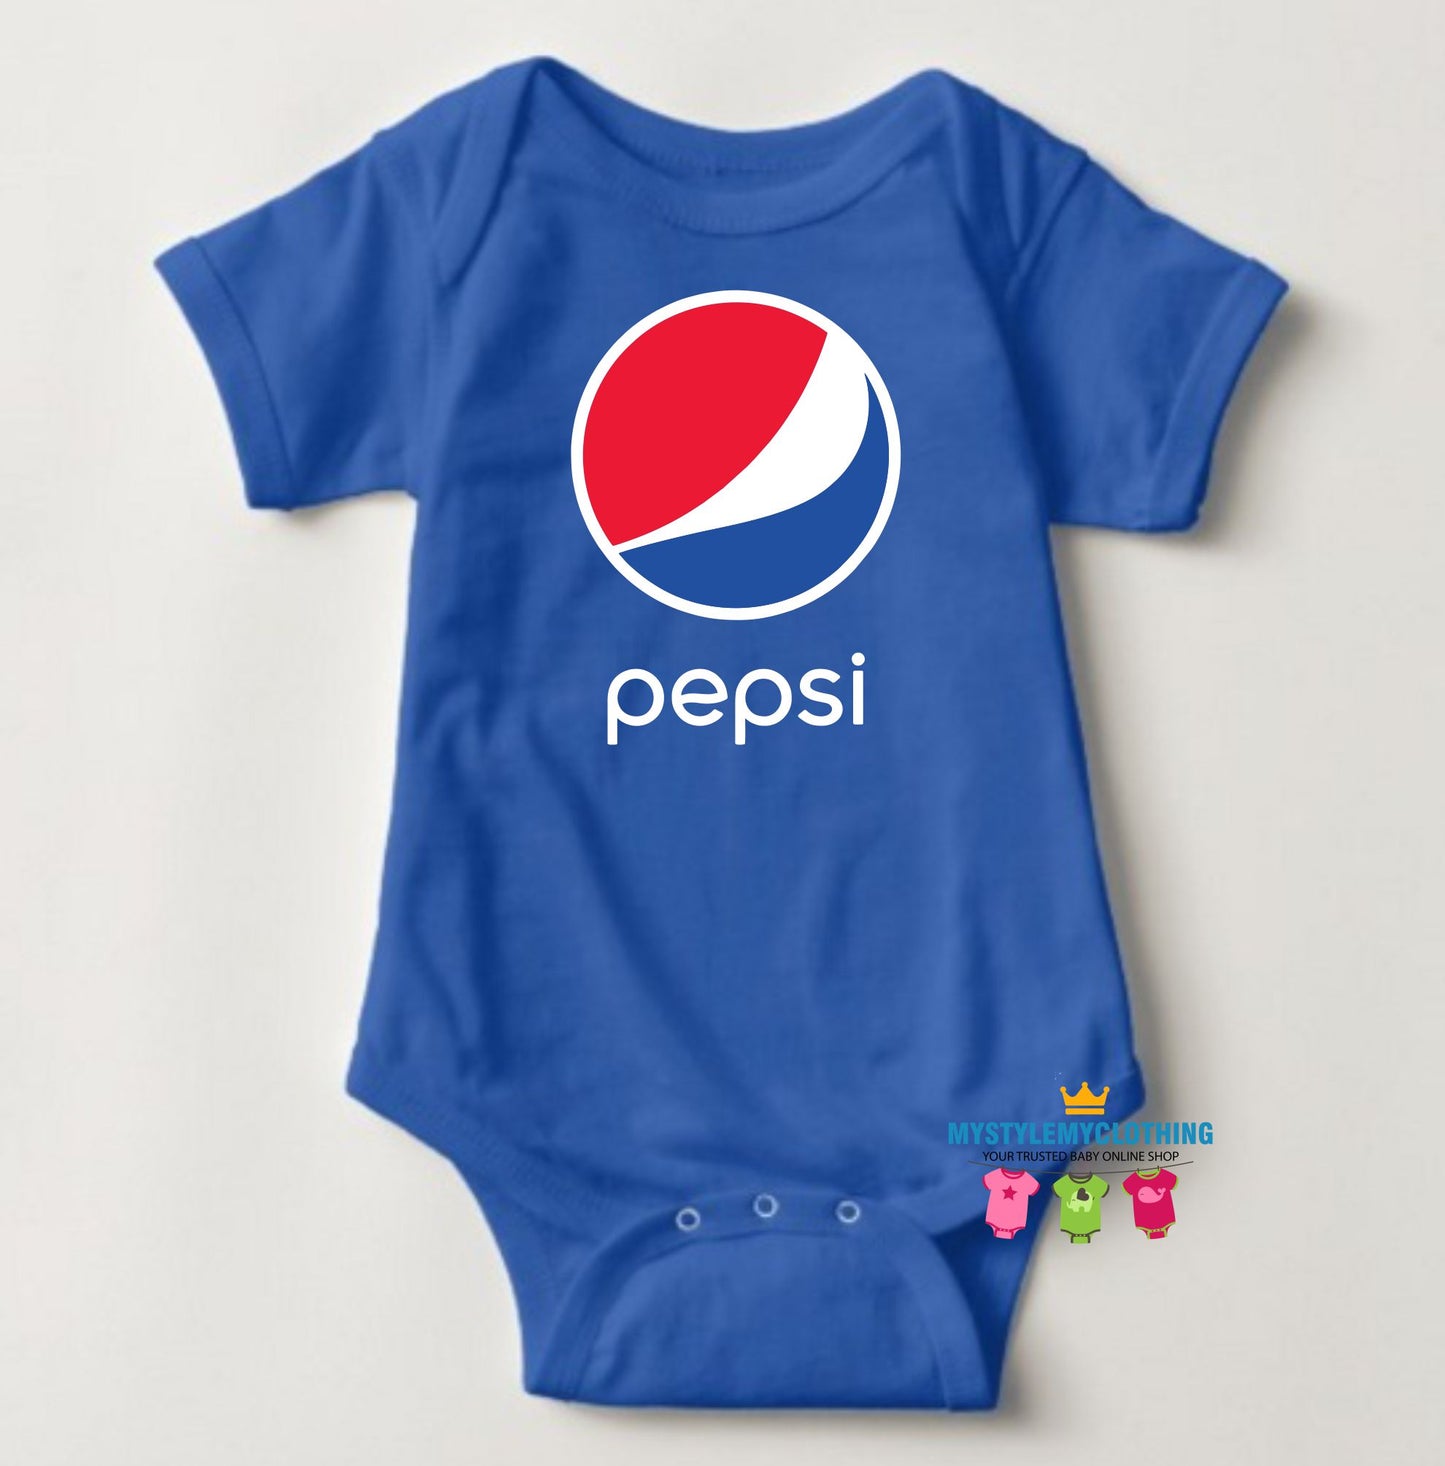 Baby Onesies Logo - Pepsi - MYSTYLEMYCLOTHING